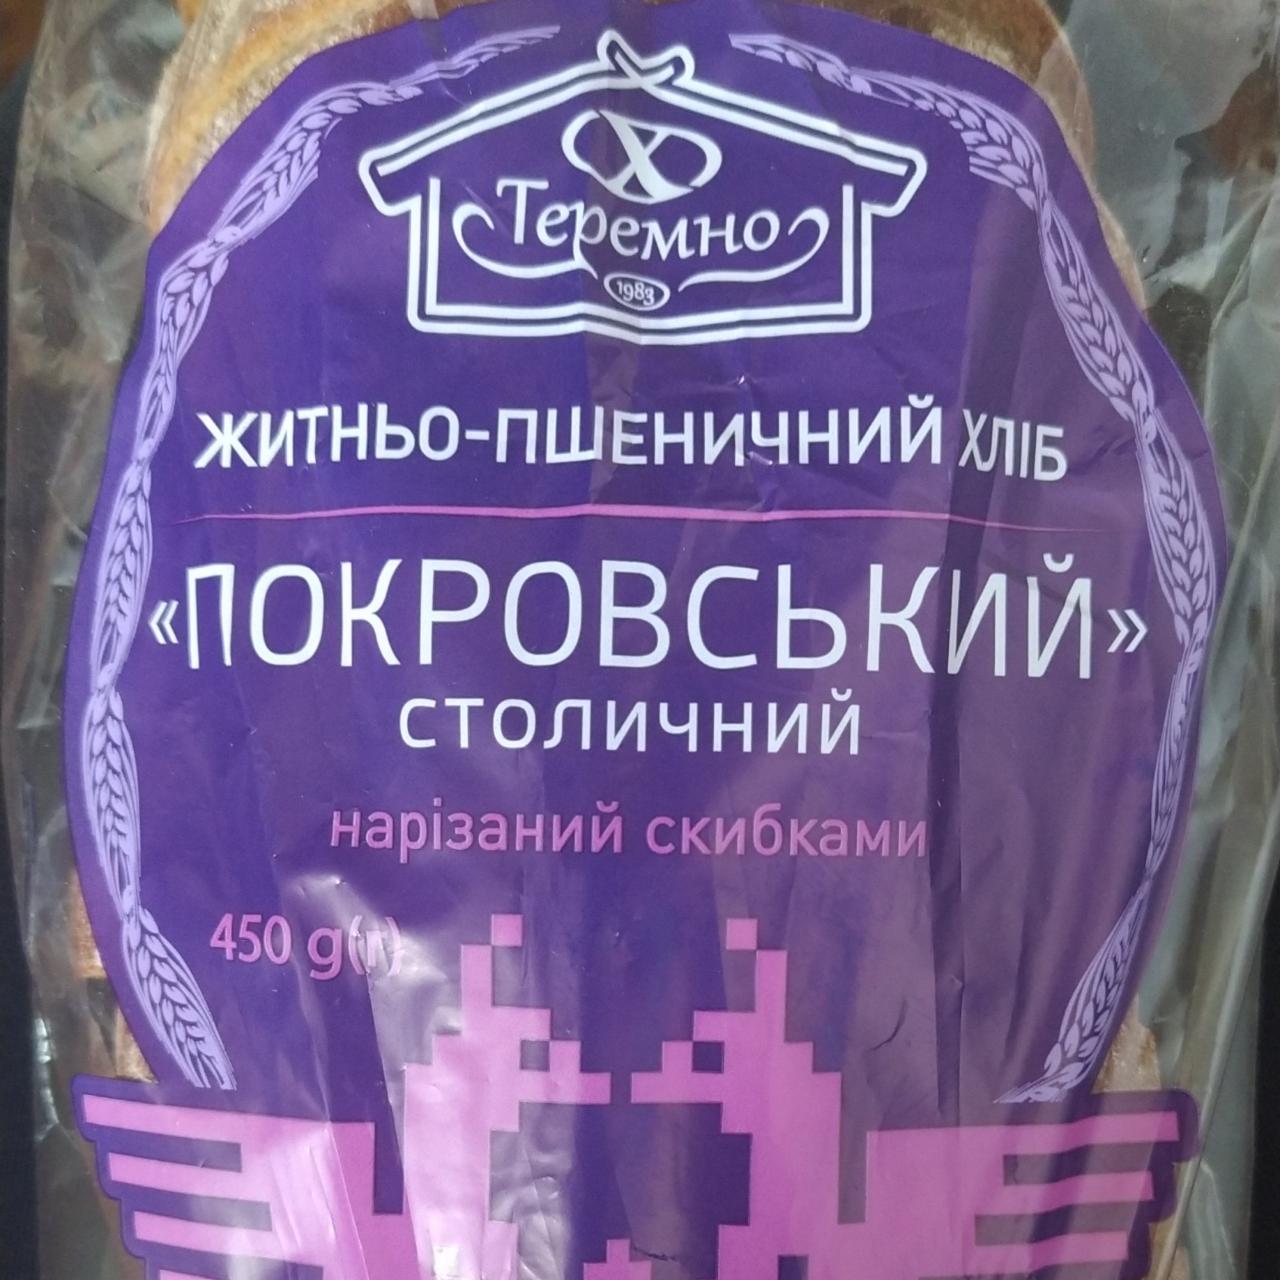 Фото - Хлеб ржано-пшеничный Покровский Теремно